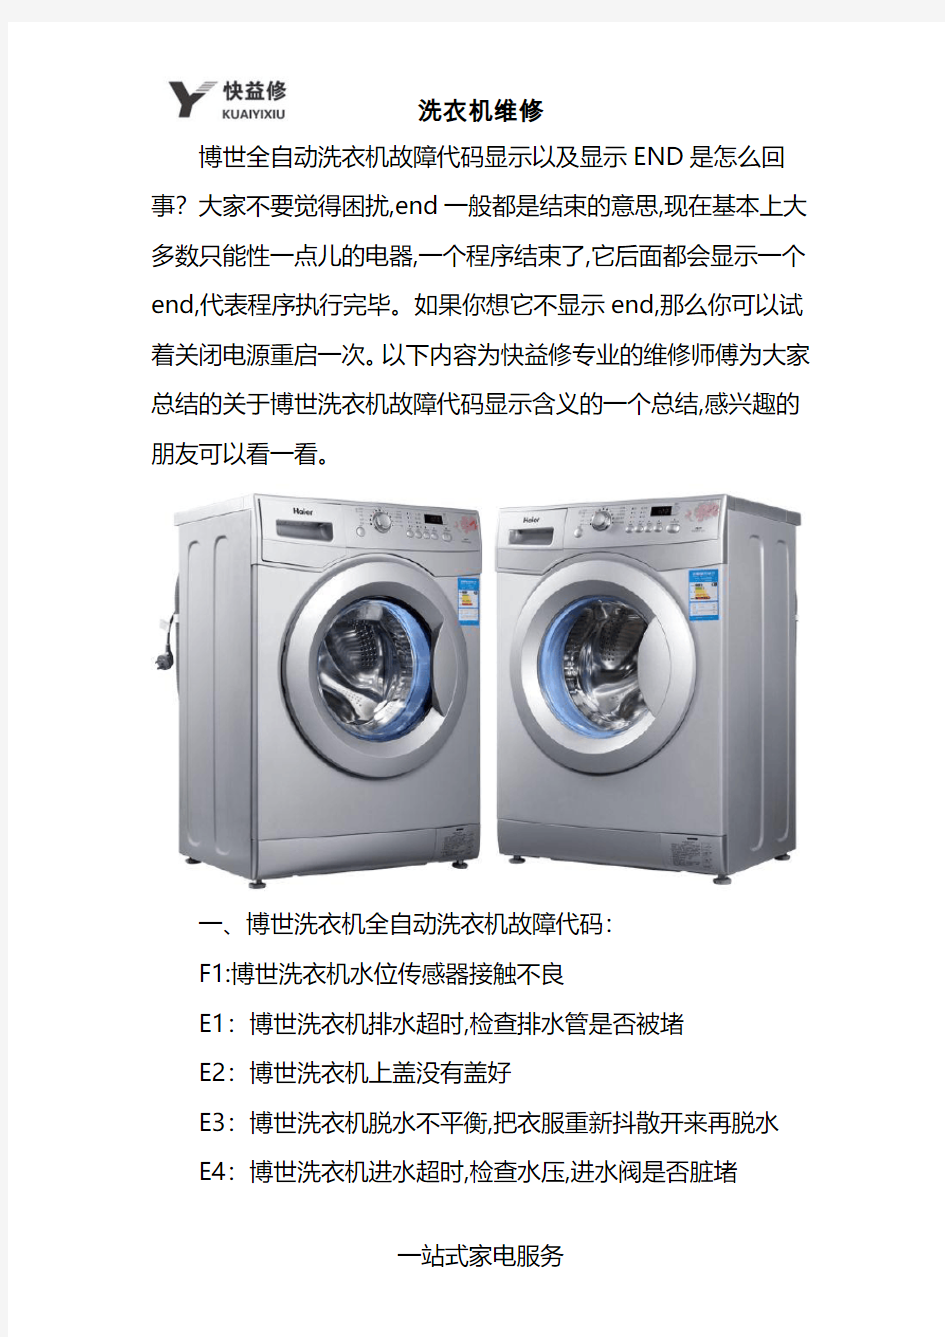 成都博世全自动滚筒洗衣机显示END及常见故障代码维修电话